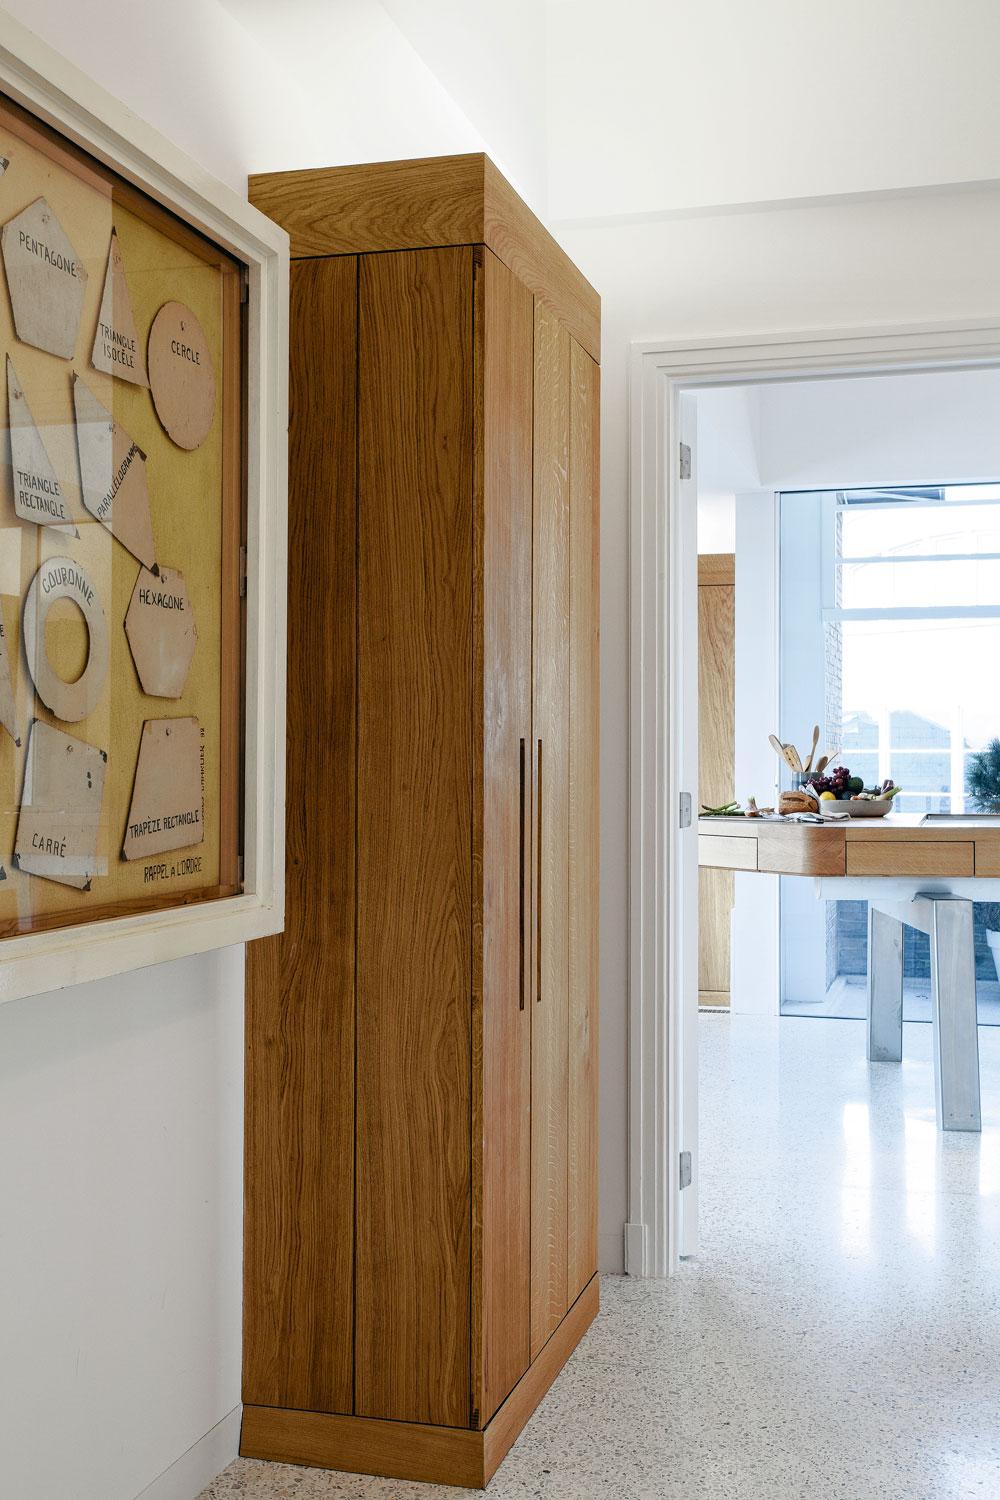 Dans le hall d'entrée, une oeuvre de Jacques Charlier et déjà une vue vers le meuble de cuisine sculptural.